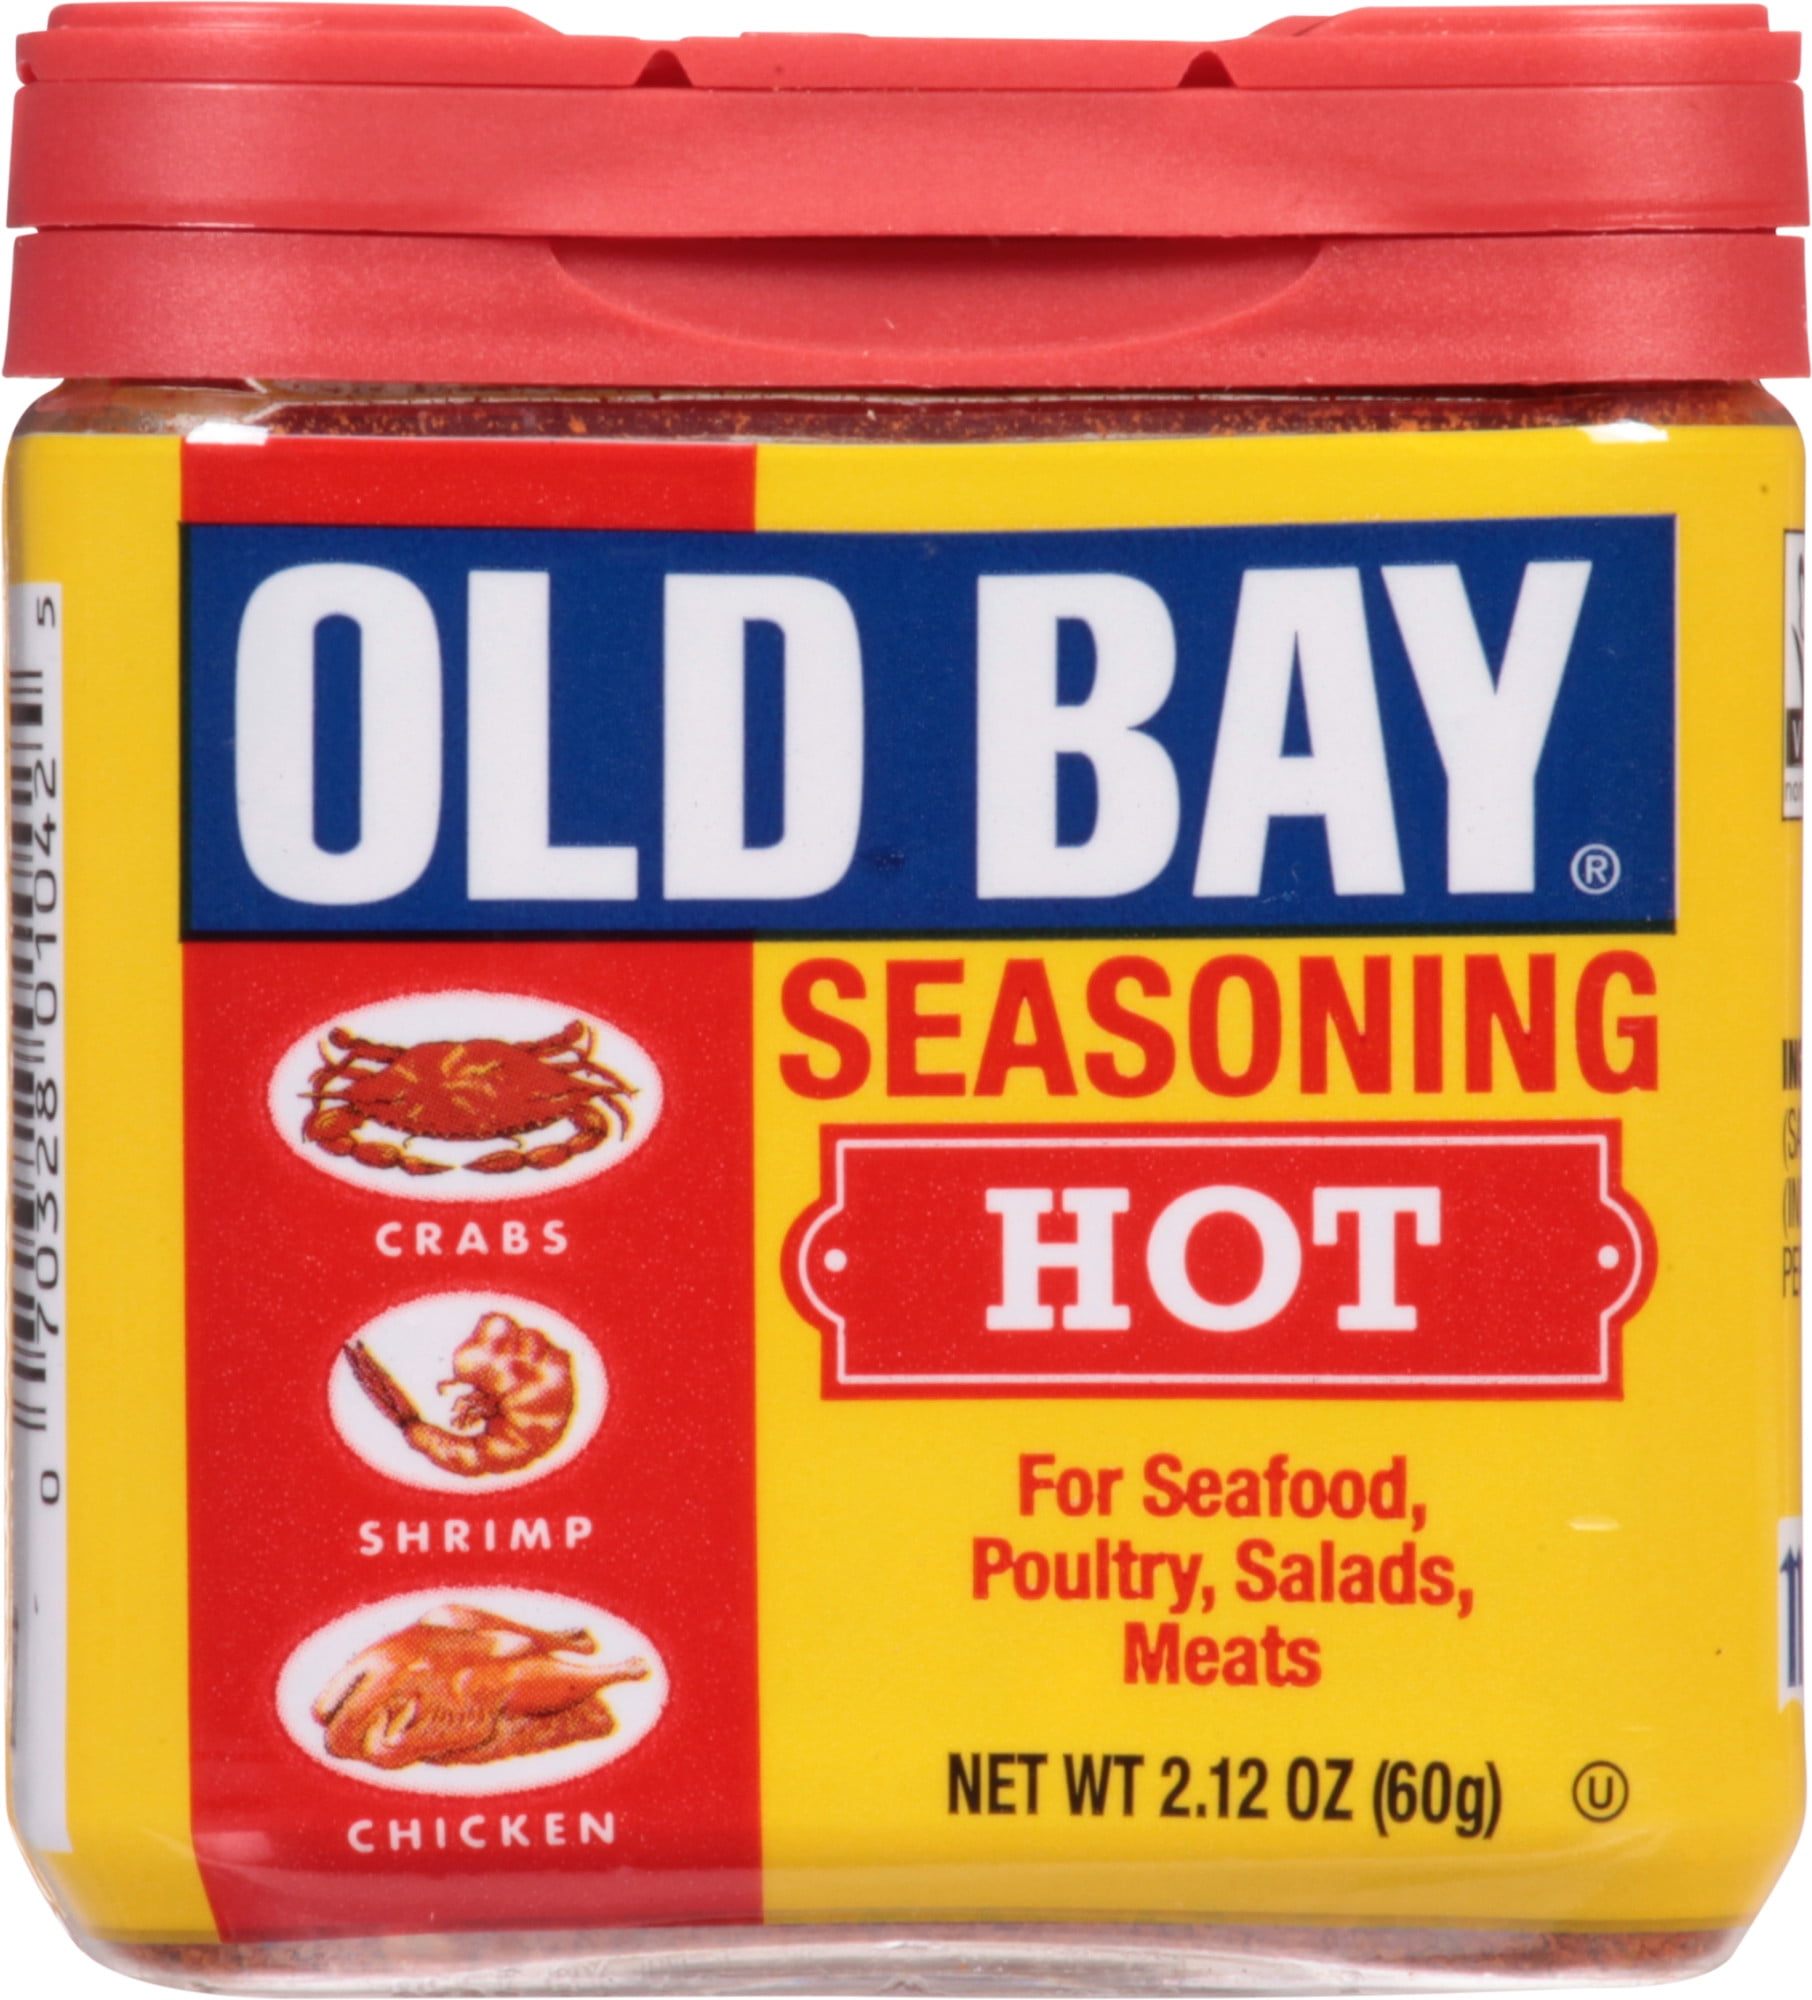 OLD BAY Hot Seasoning, 2.12 oz Mixed Spices & Seasonings